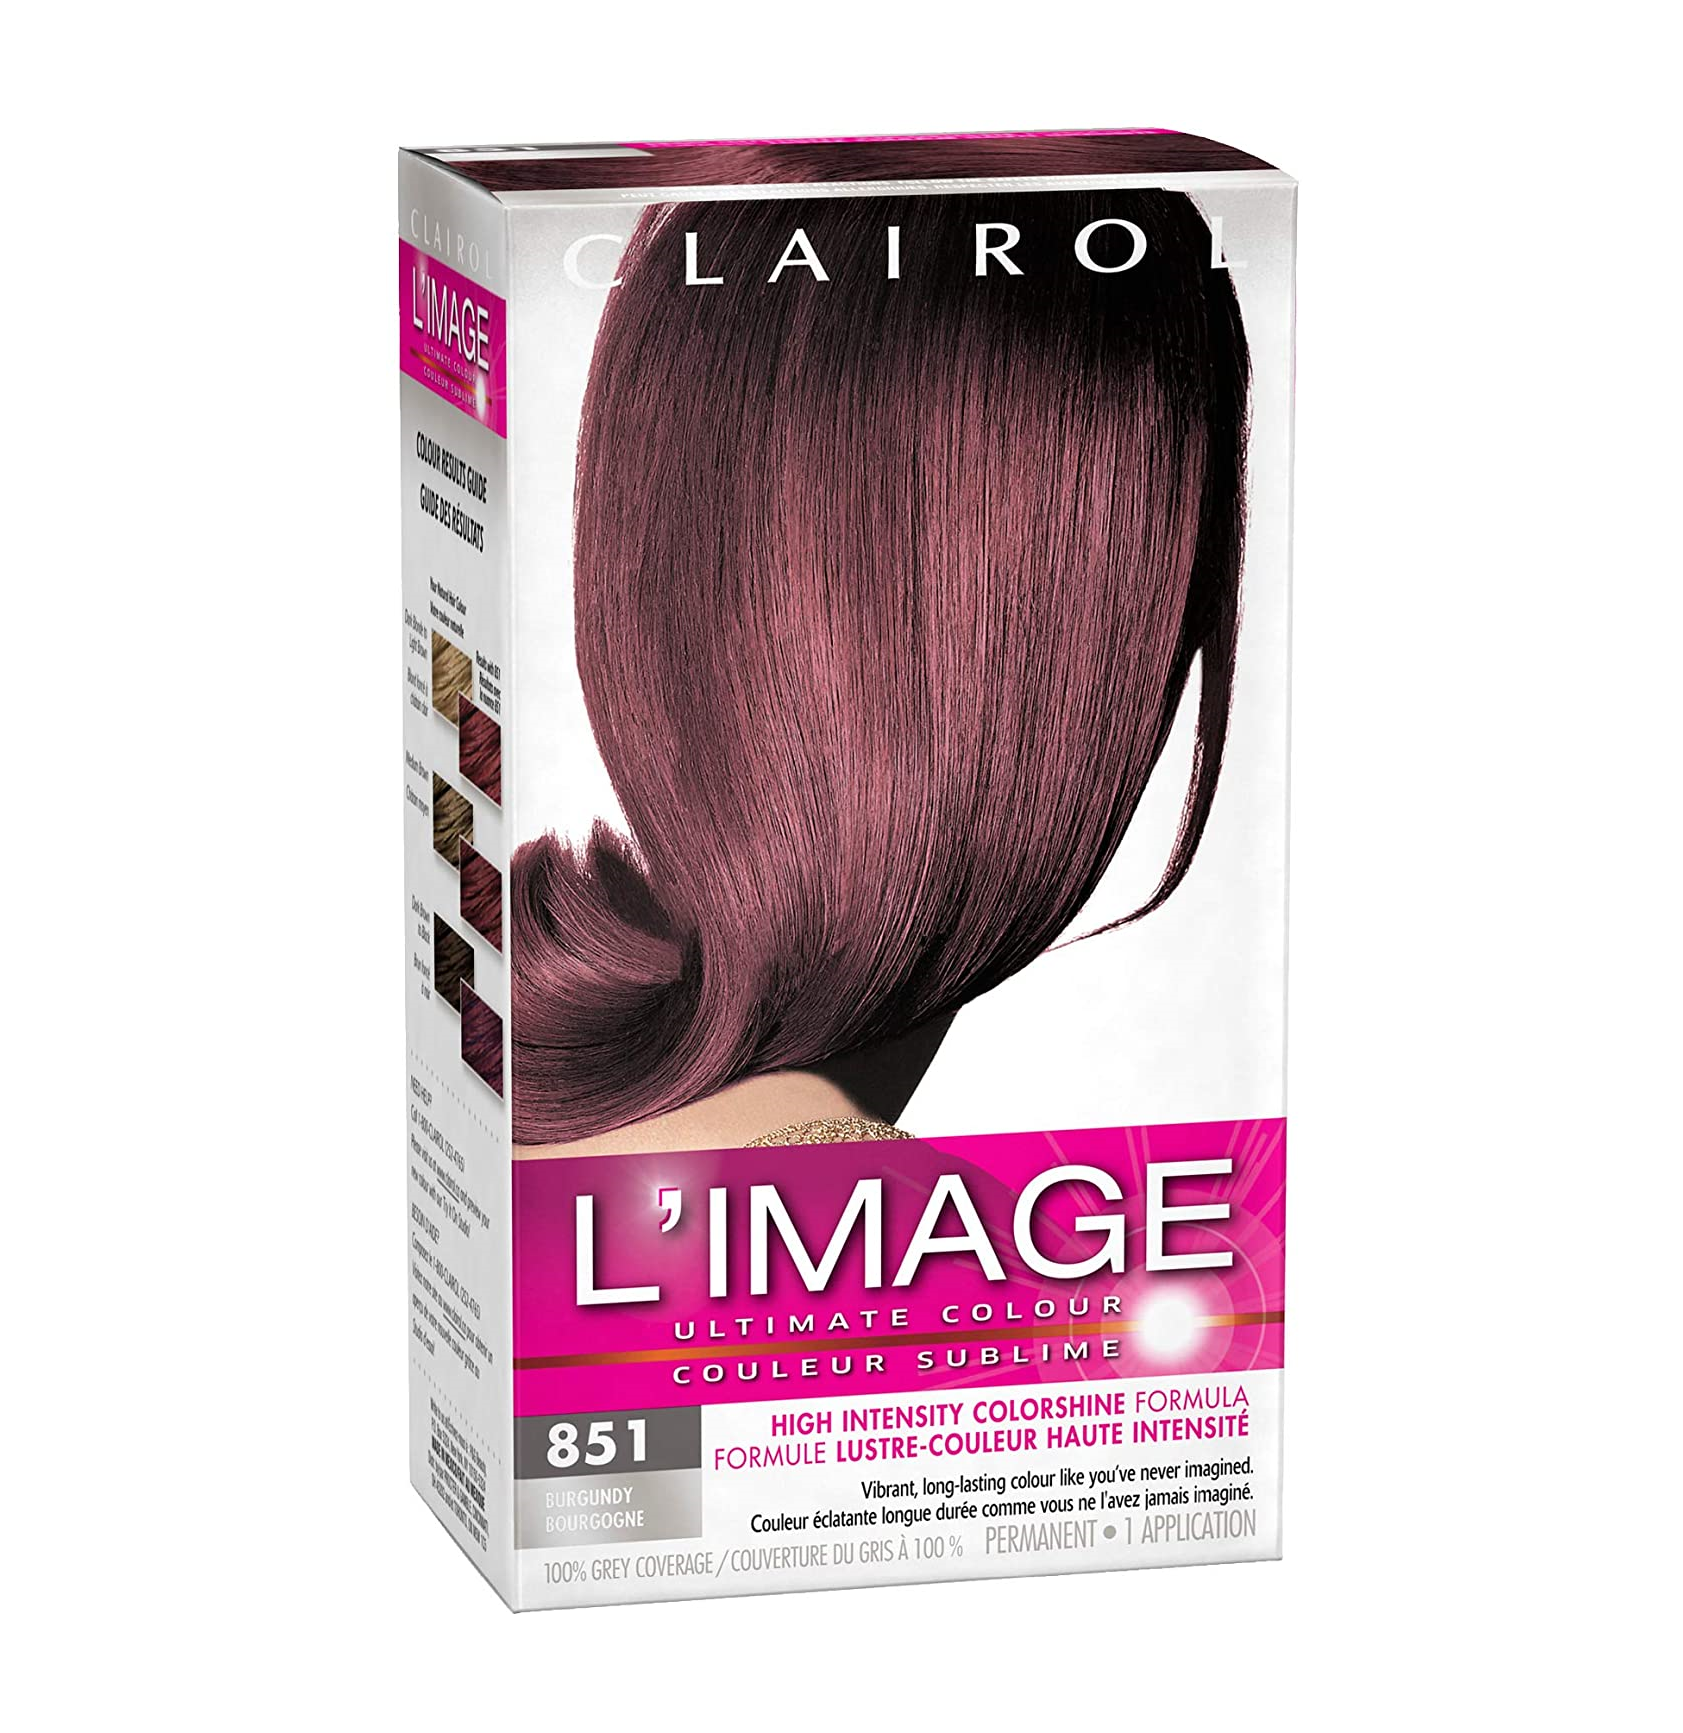 Clairol L'Image Ultimate Colour Permanent Hair Colour